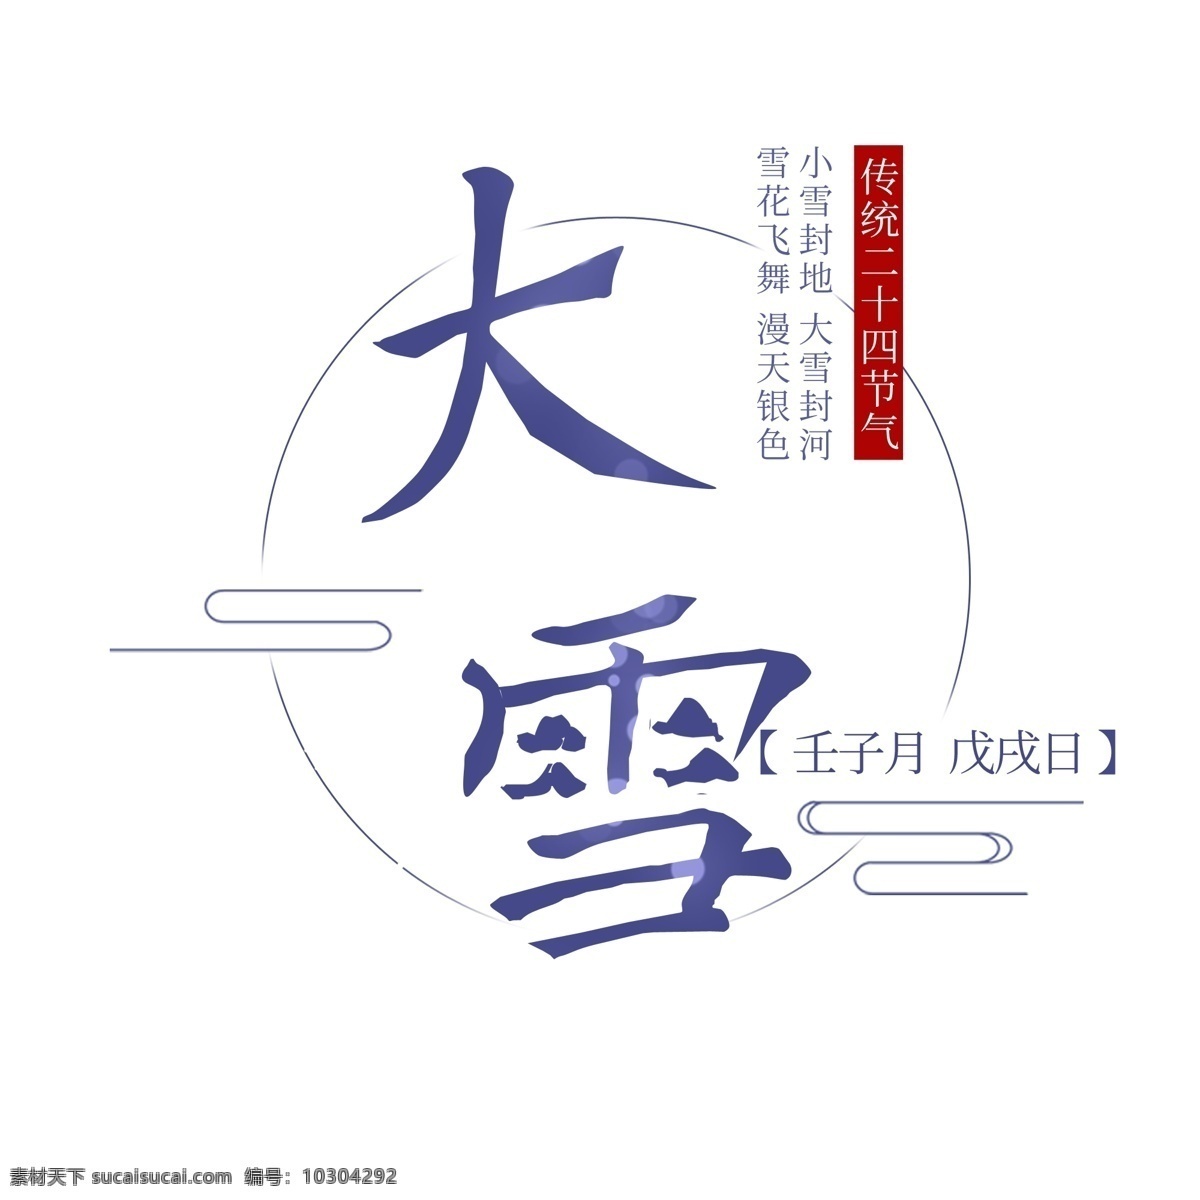 二十四节气 大雪 原创 元素 字体 传统文化 中国元素 蓝色 设计元素 原创元素